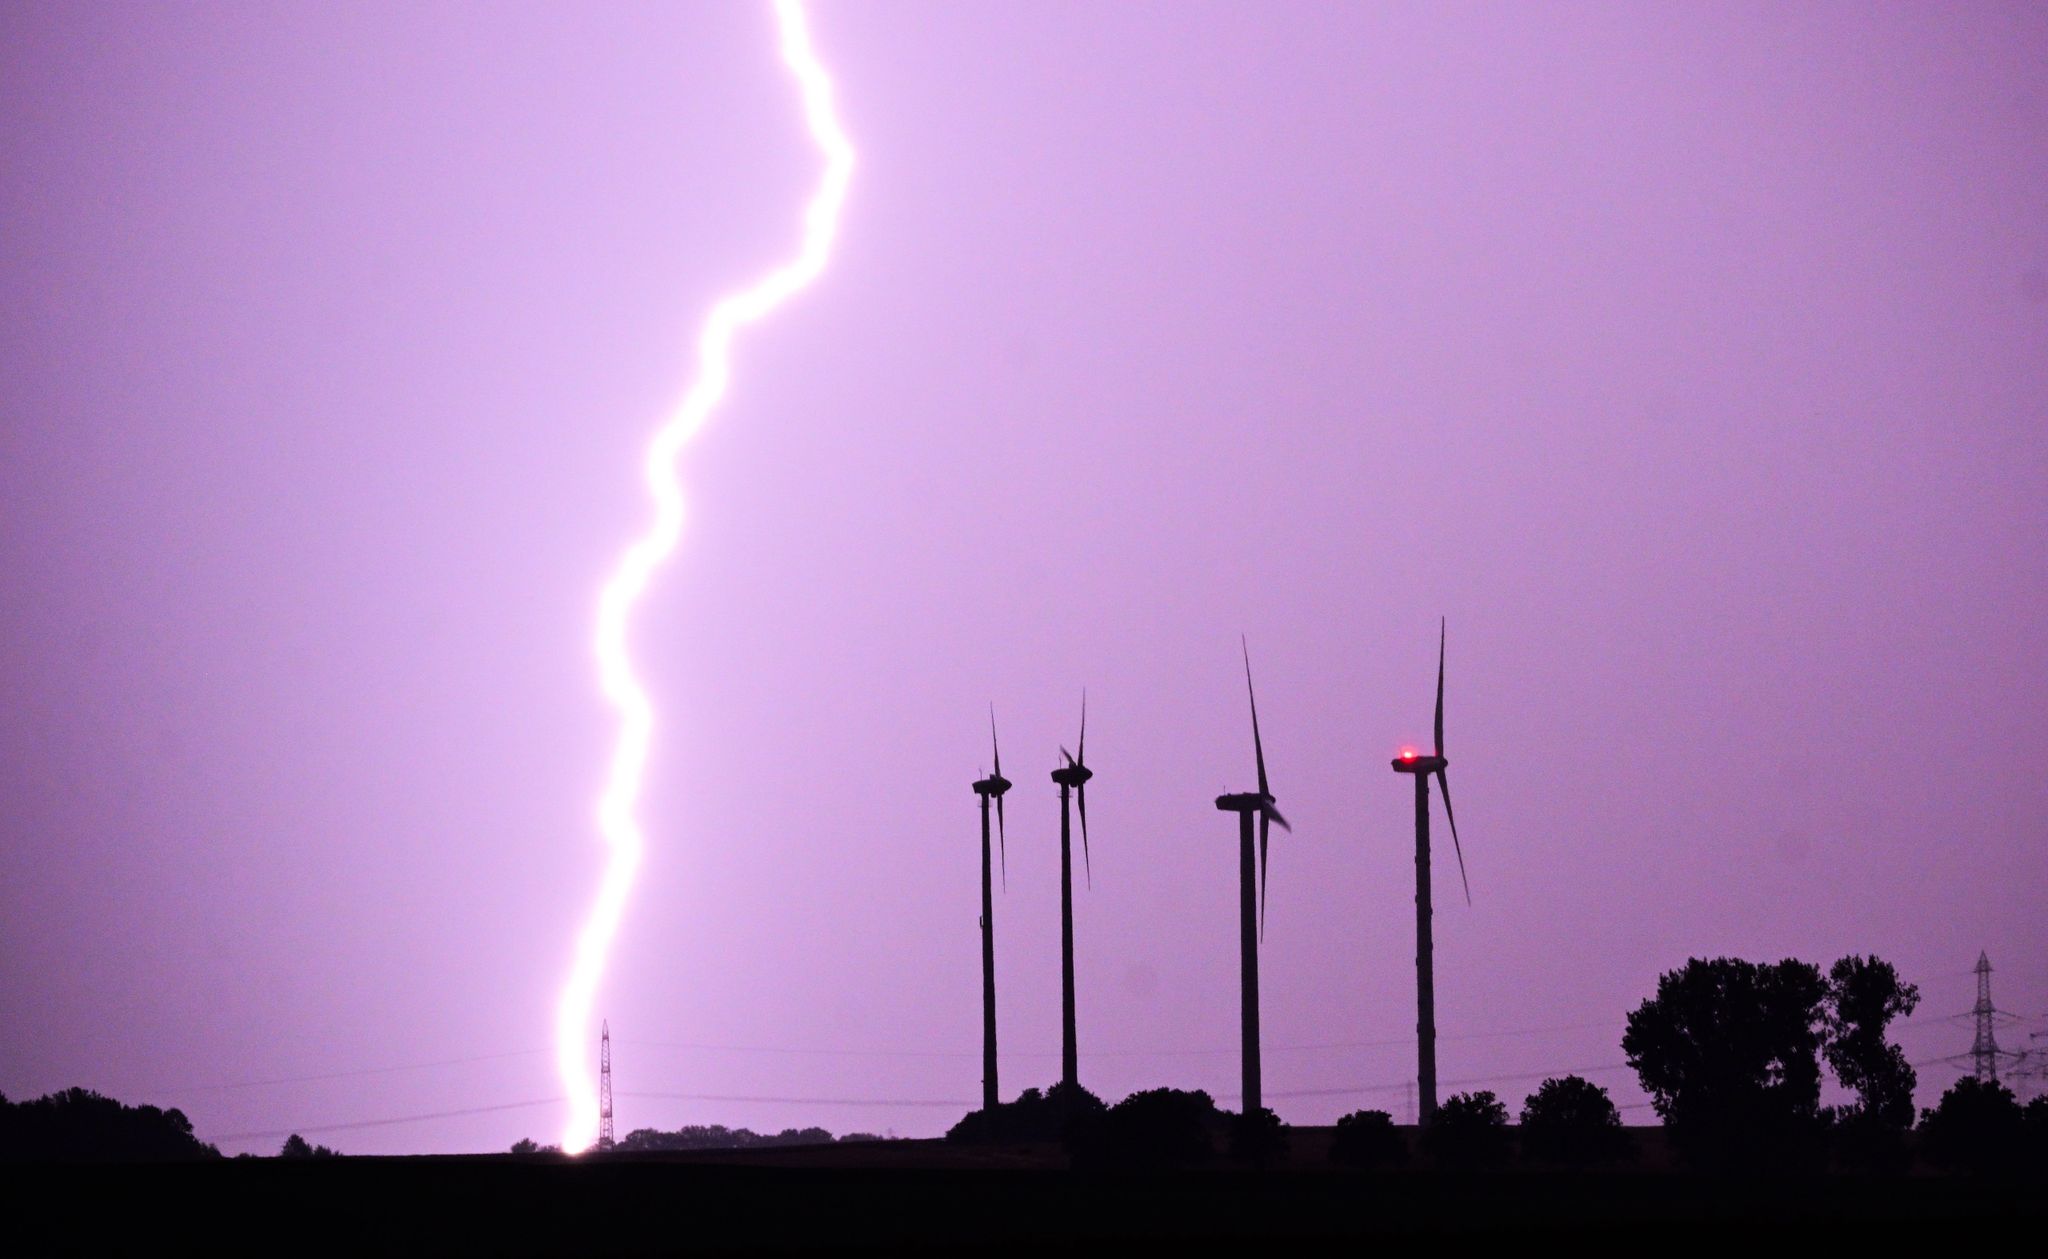 Ein Blitz entlädt sich während eines Gewitters hinter Windrädern.